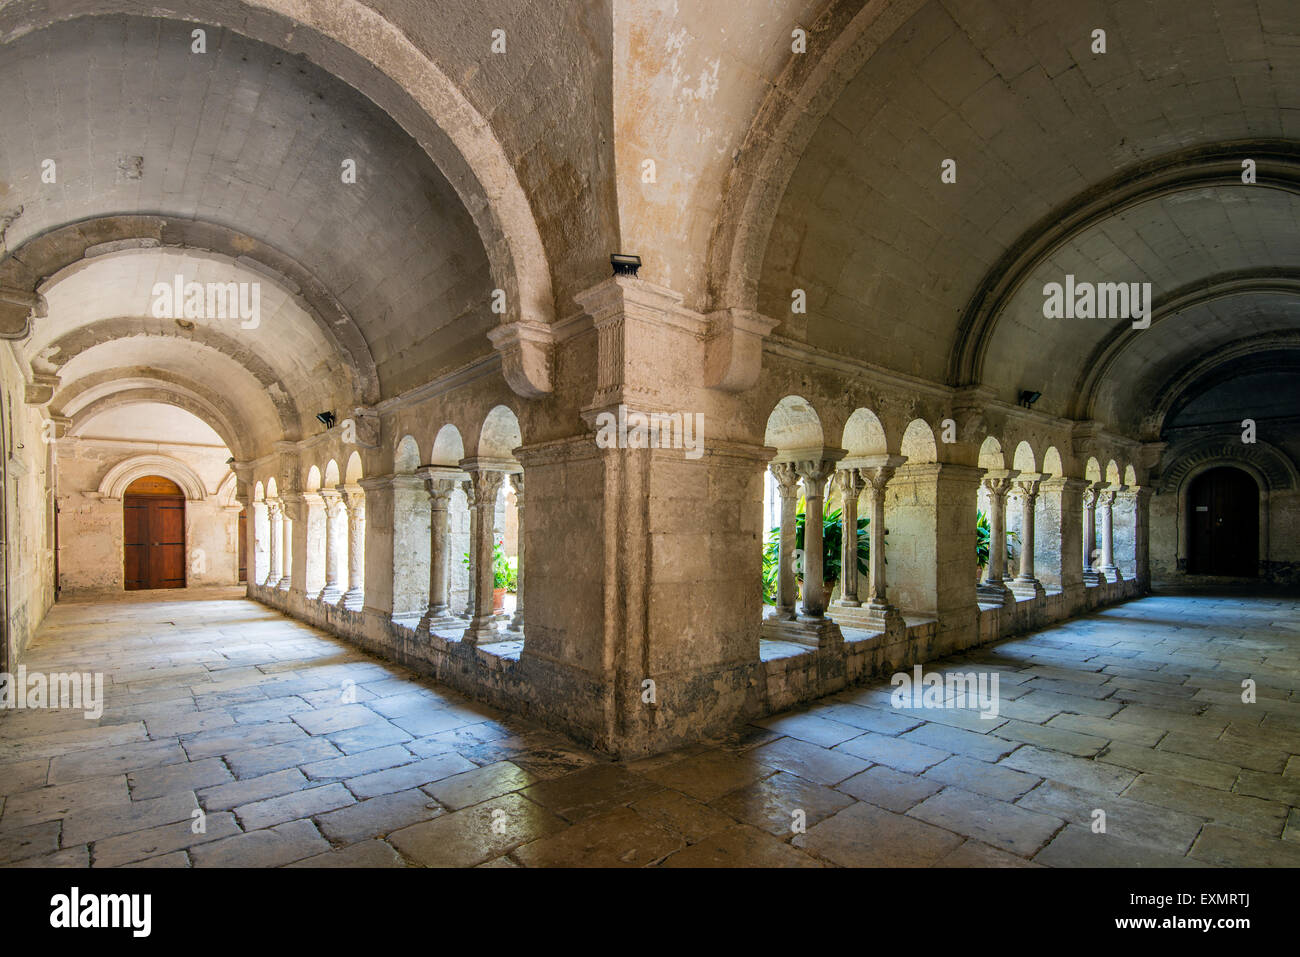 Monastere Saint-Paul-de-Mausole, Saint-Remy-de-Provence, Provence, France Stock Photo